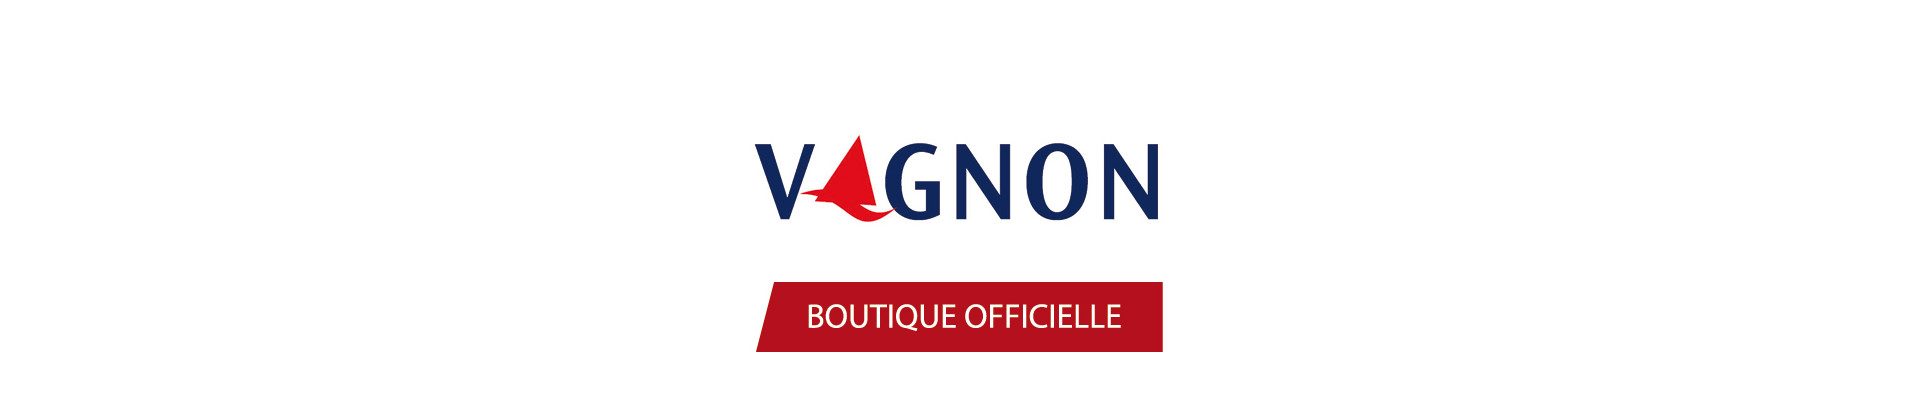 Vagnon Maritime Bookstore